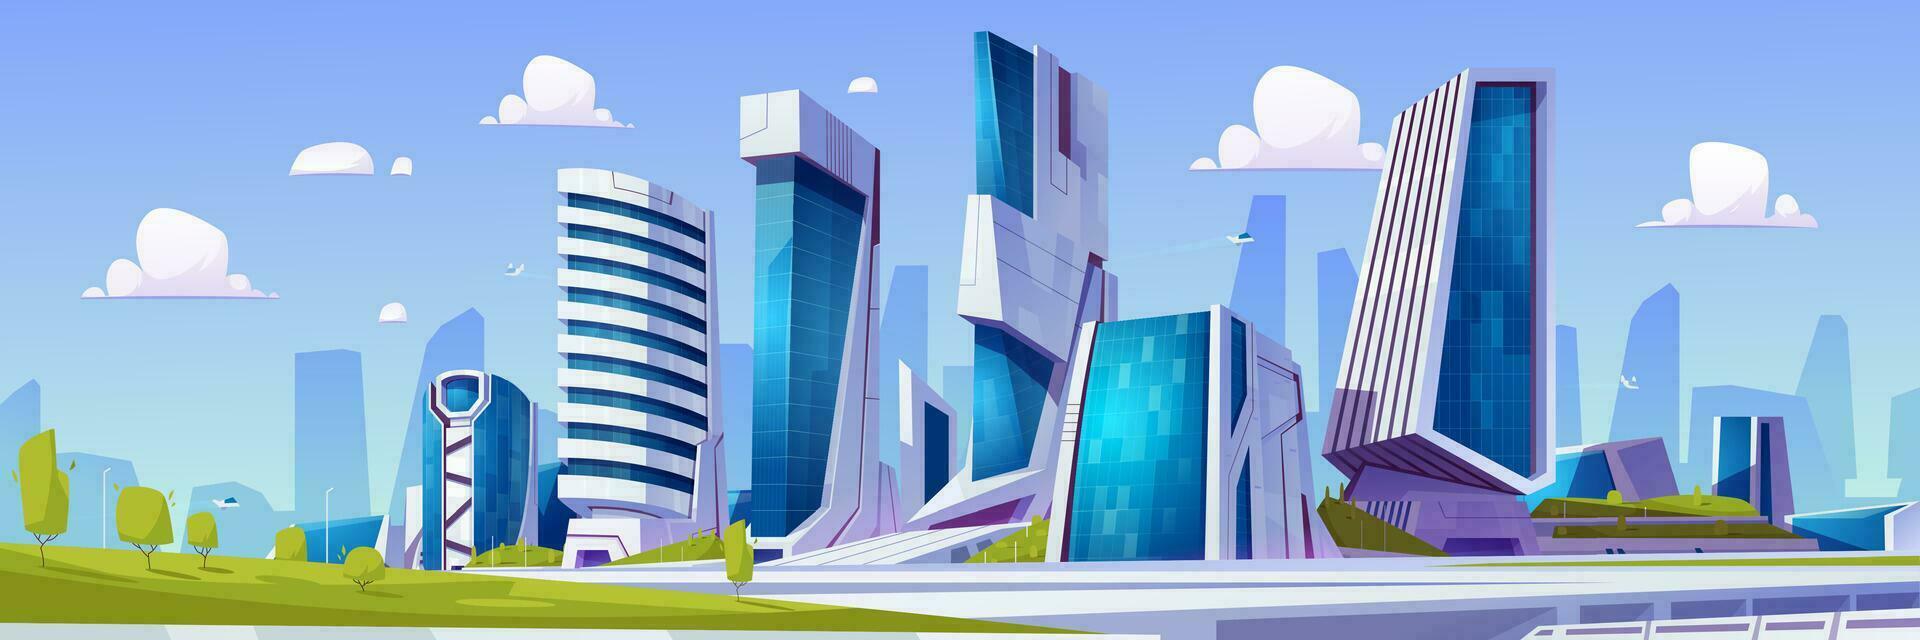 dibujos animados futurista ciudad con verde parque vector